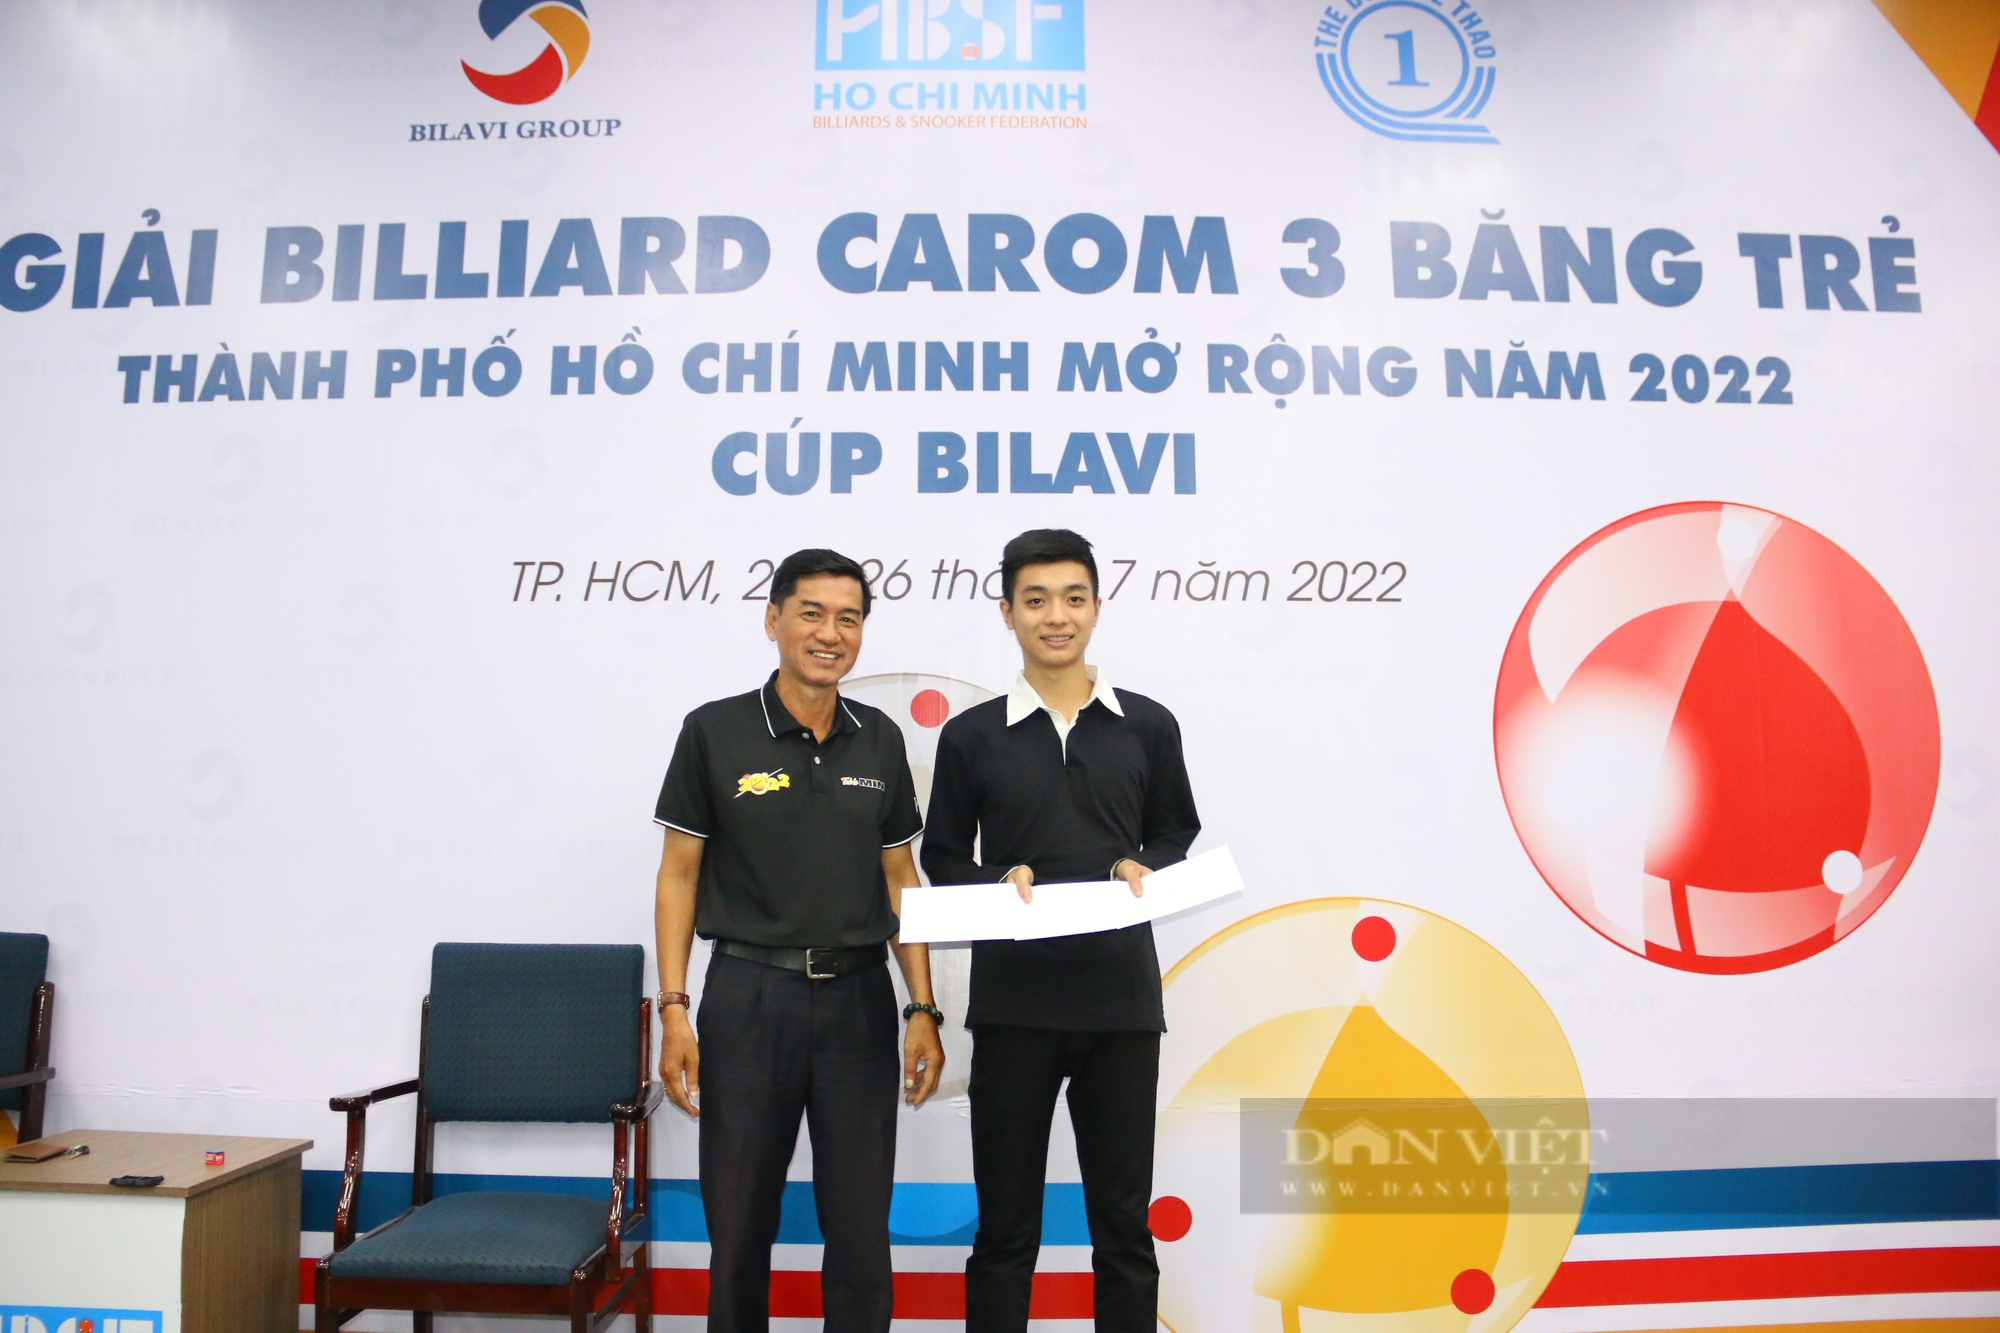 Giải Billiard Carom 3 băng trẻ TP.HCM mở rộng 2022: Ấn tượng với các tài năng trẻ - Ảnh 6.